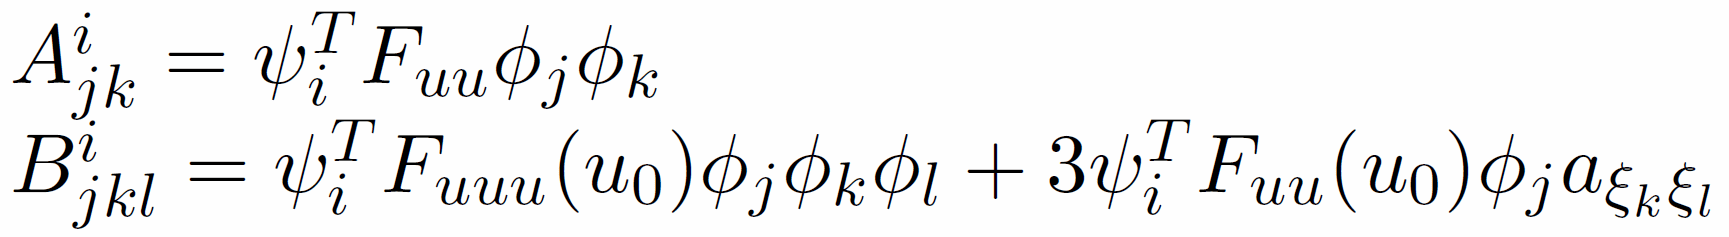 A^i_{jk}=\Psi_i^T F_{uu} phi_j phi_k, B^i_{jkl}=...